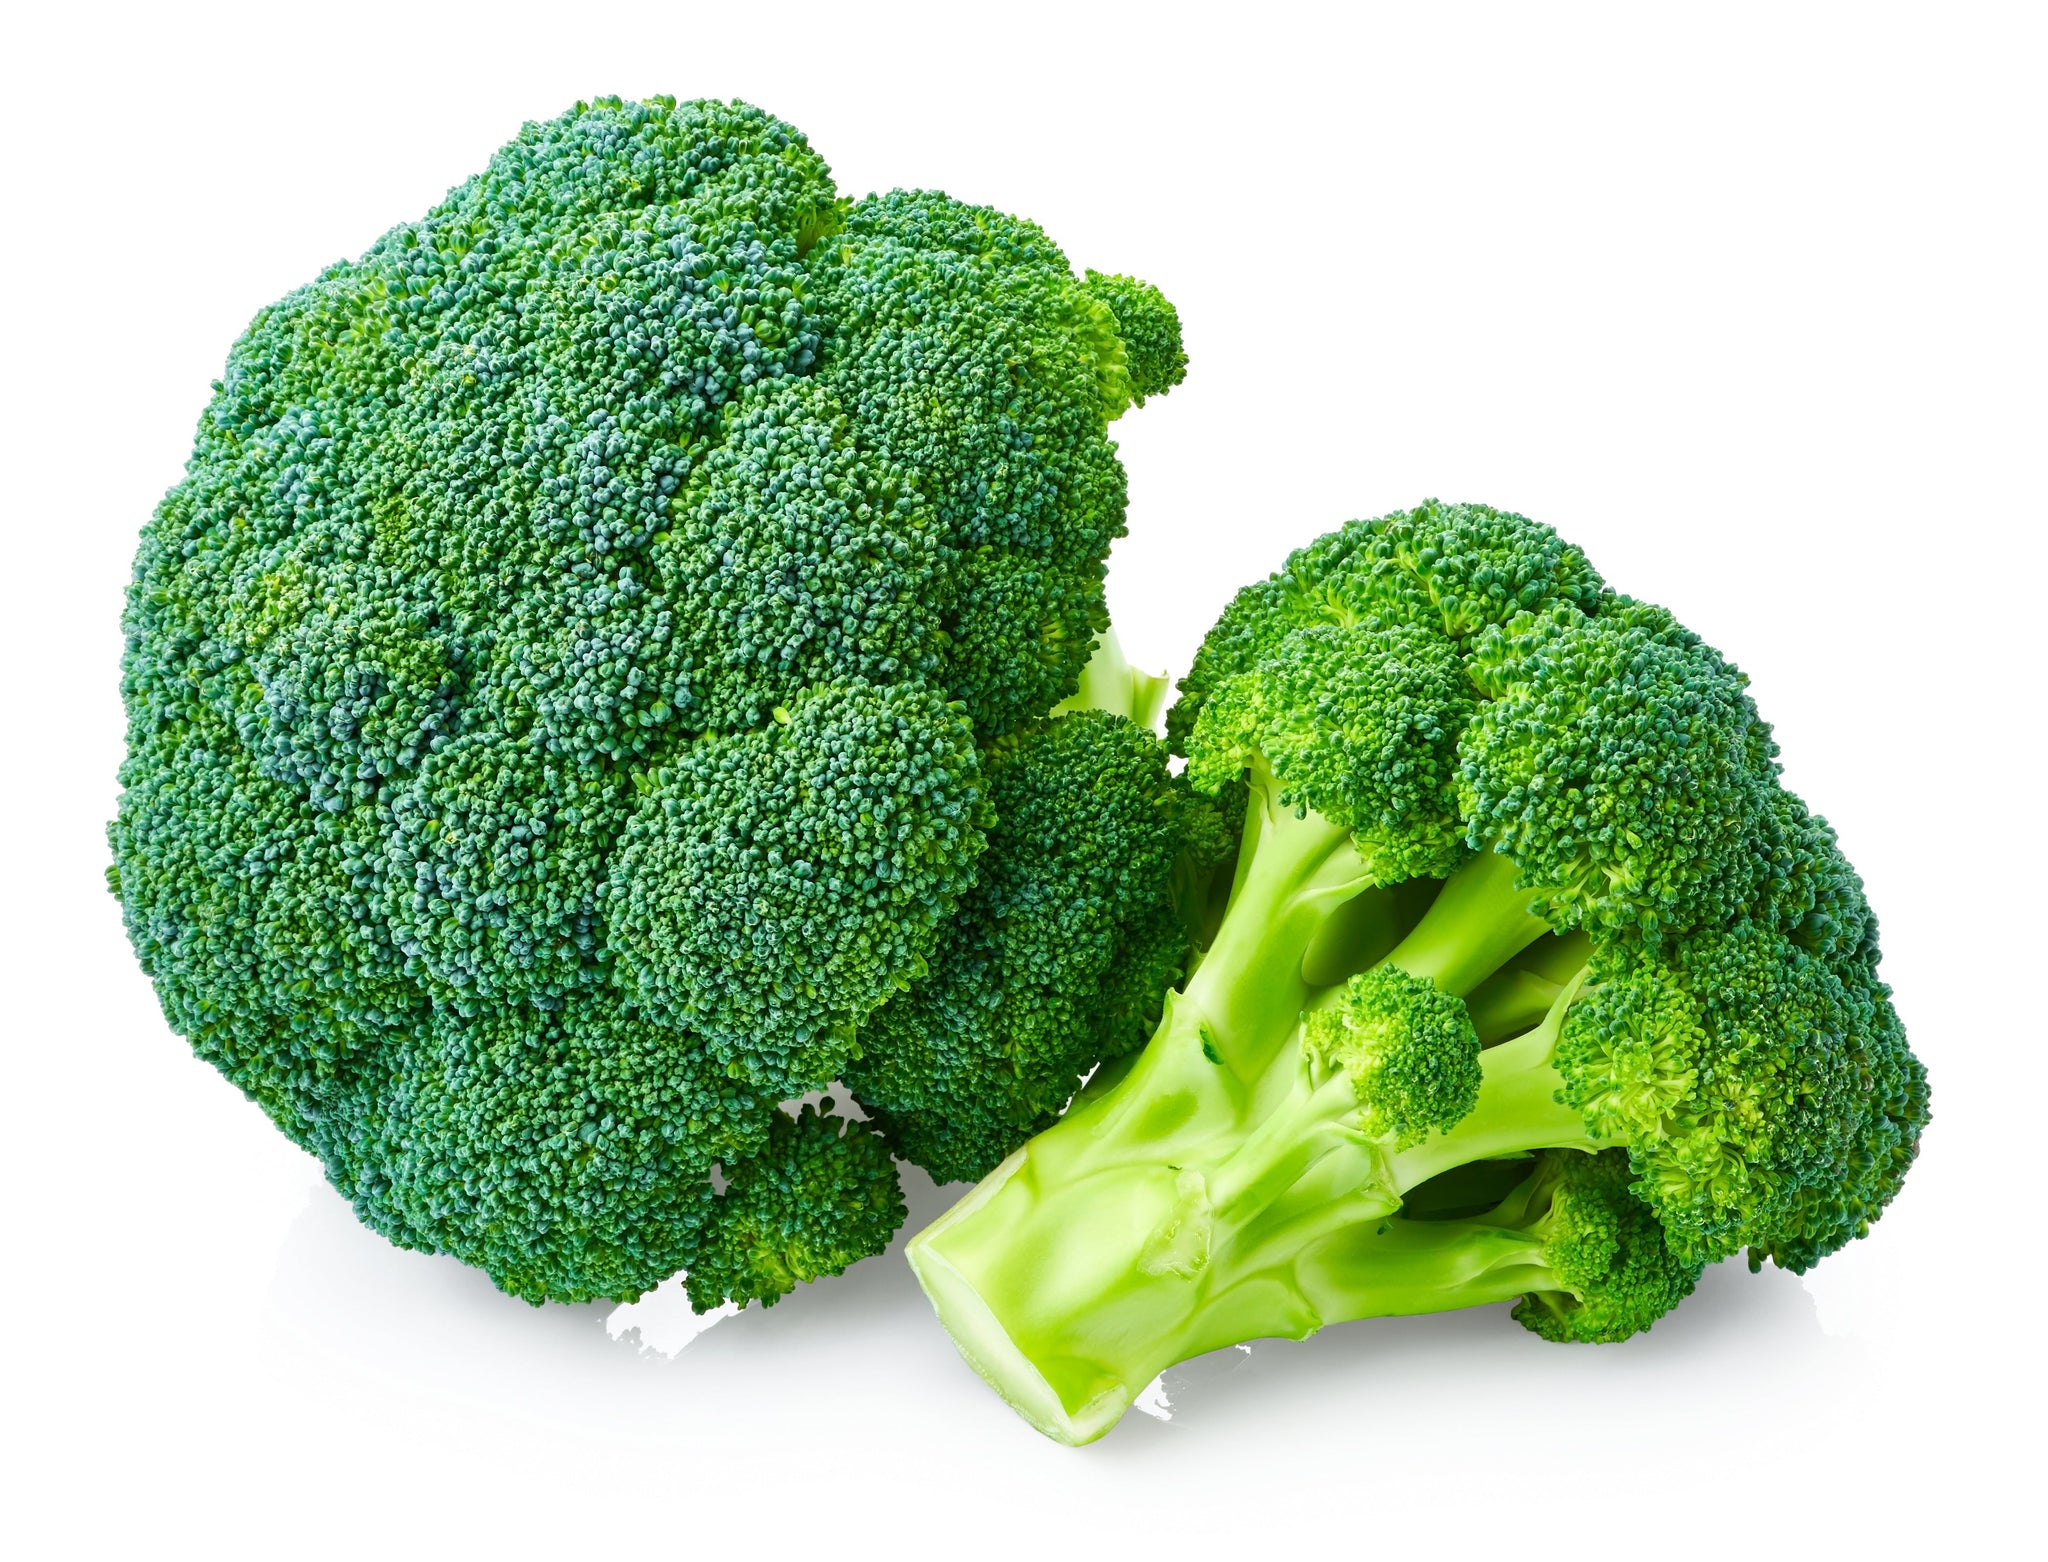 stm>Broccoli per kg, 2.20lbs